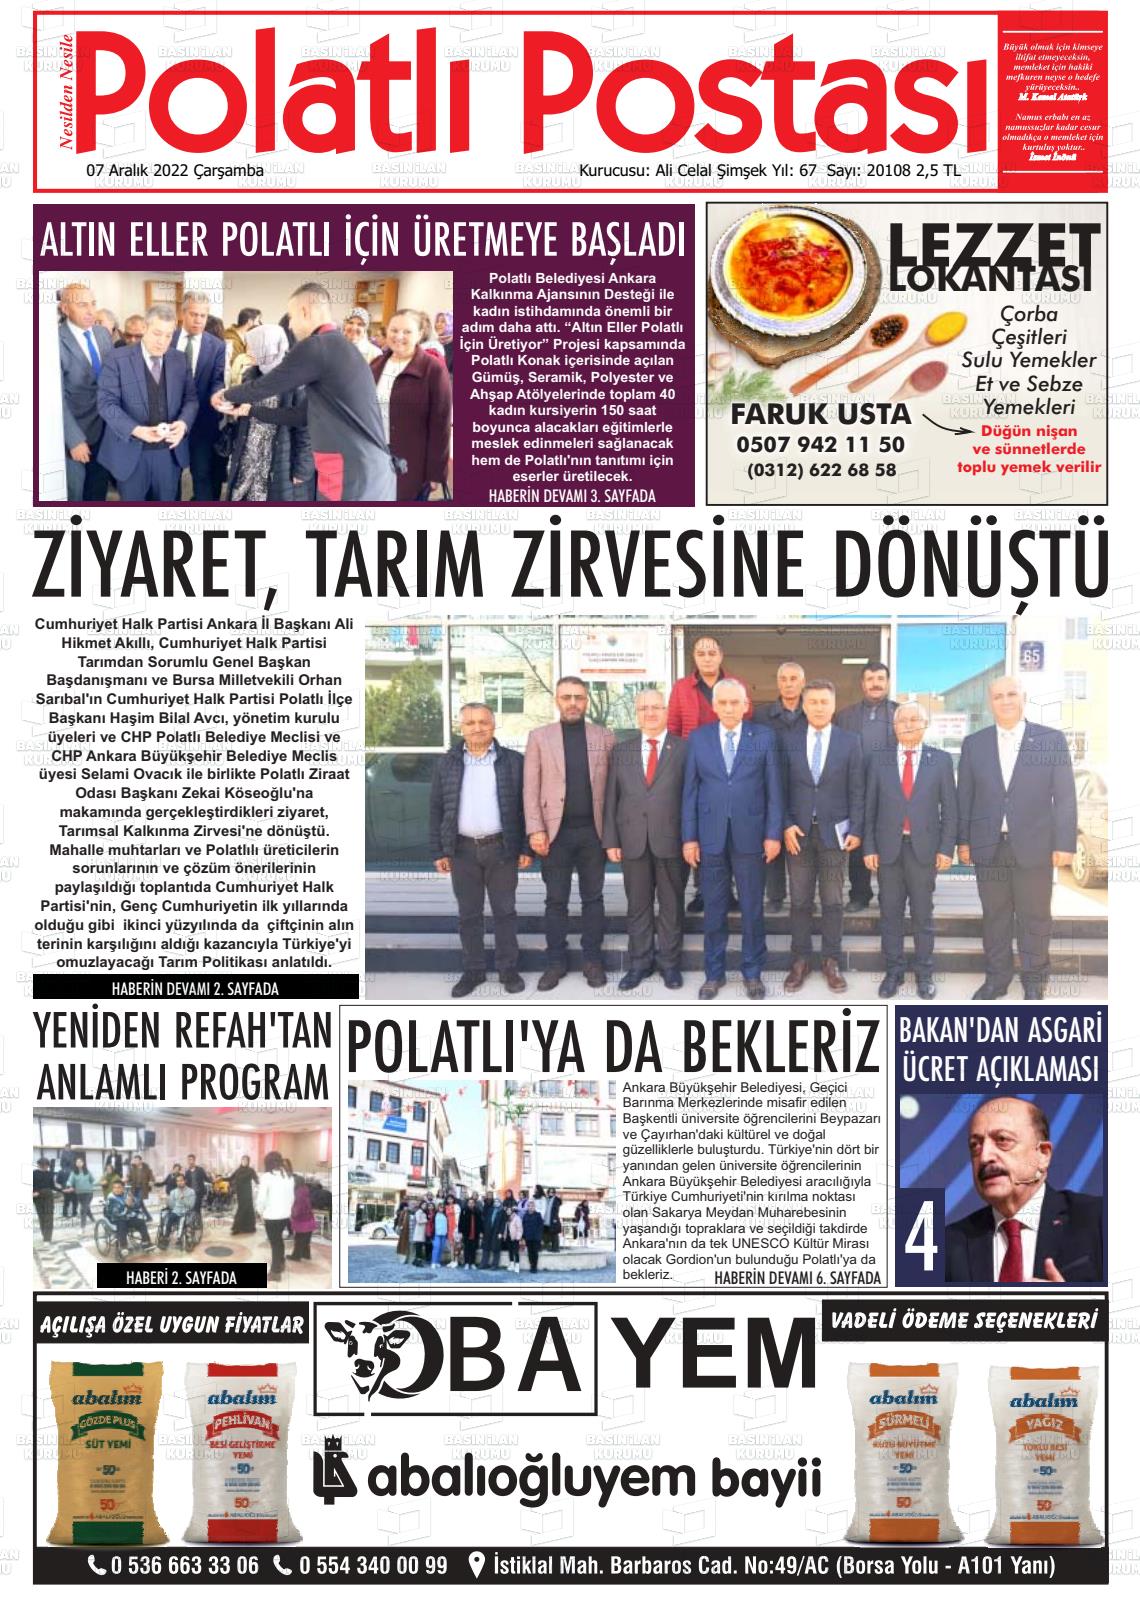 07 Aralık 2022 Polatlı Postası Gazete Manşeti